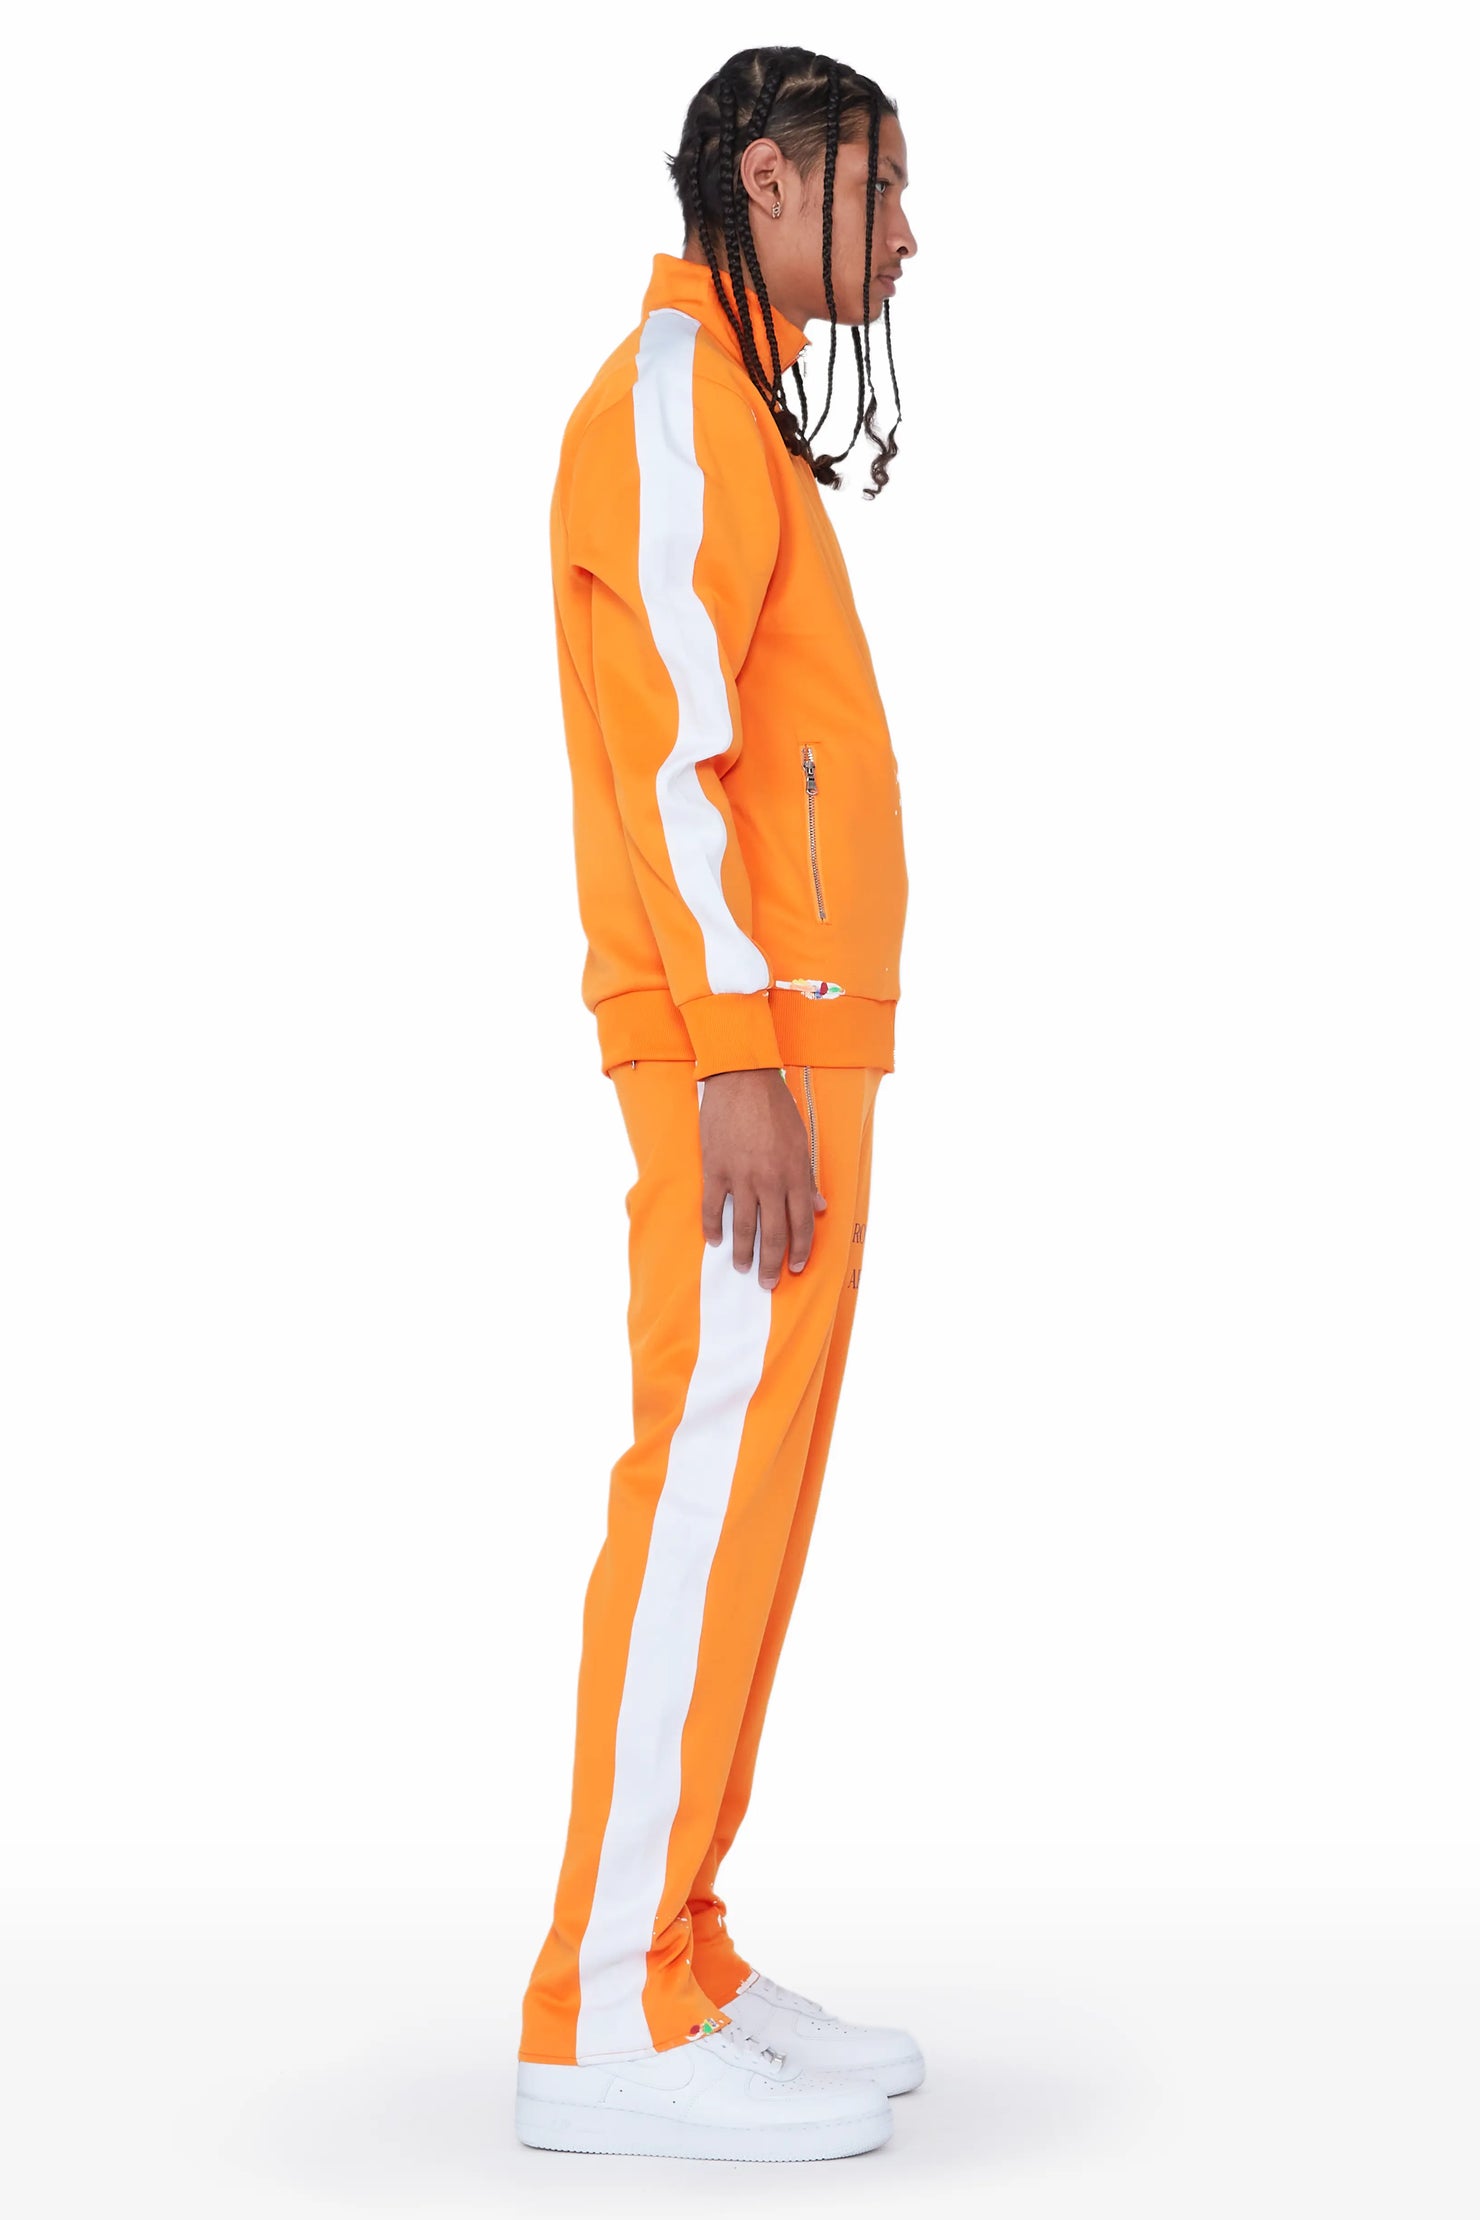 Rockstar Art Dist. Orange Tricot Slim Fit Track Set